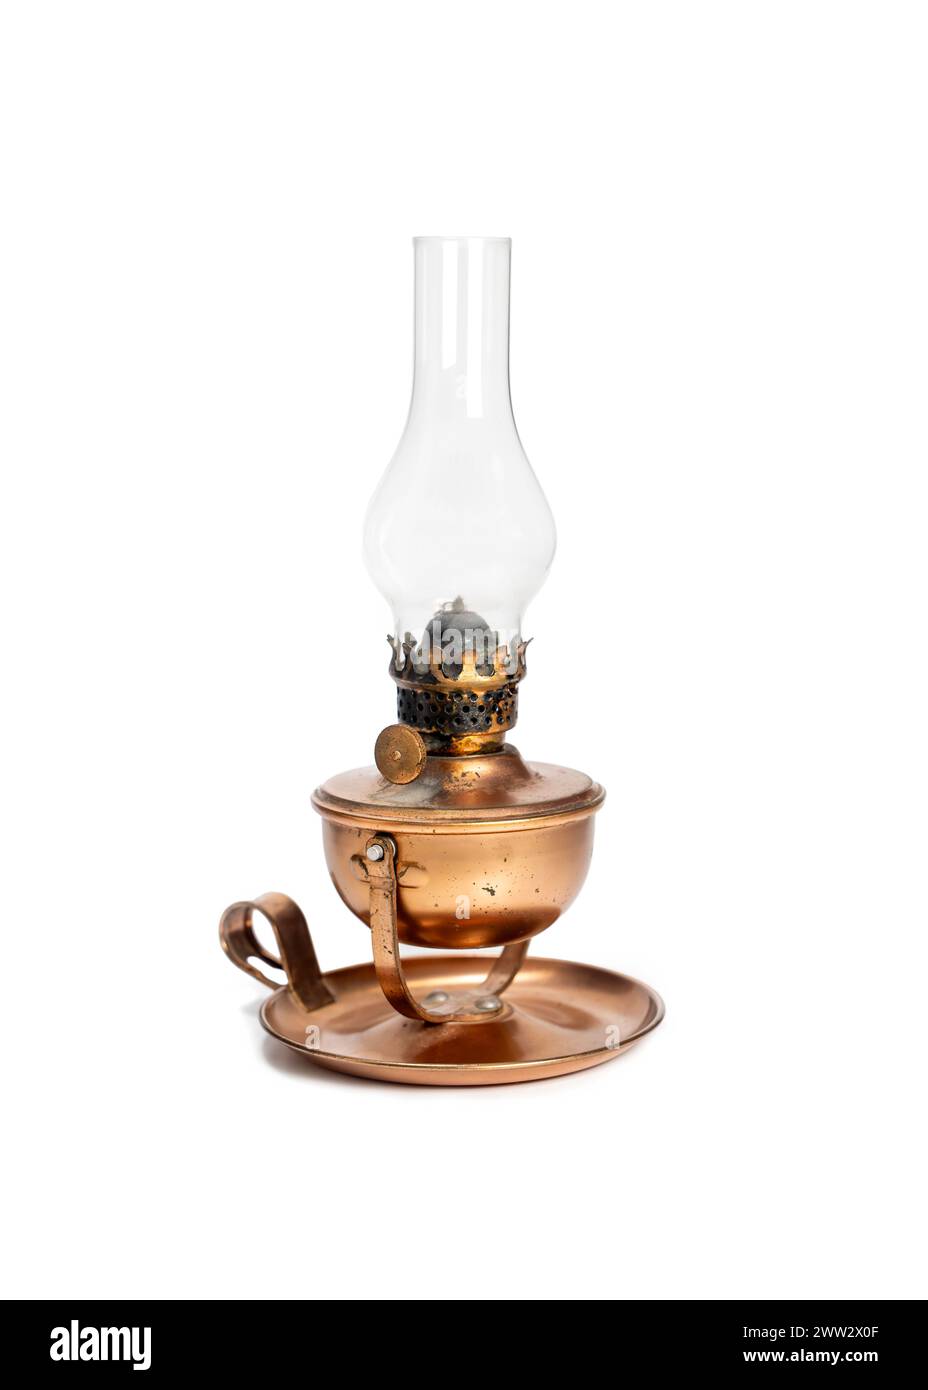 Lampe à huile vintage avec des rayures, isolé sur fond blanc Banque D'Images